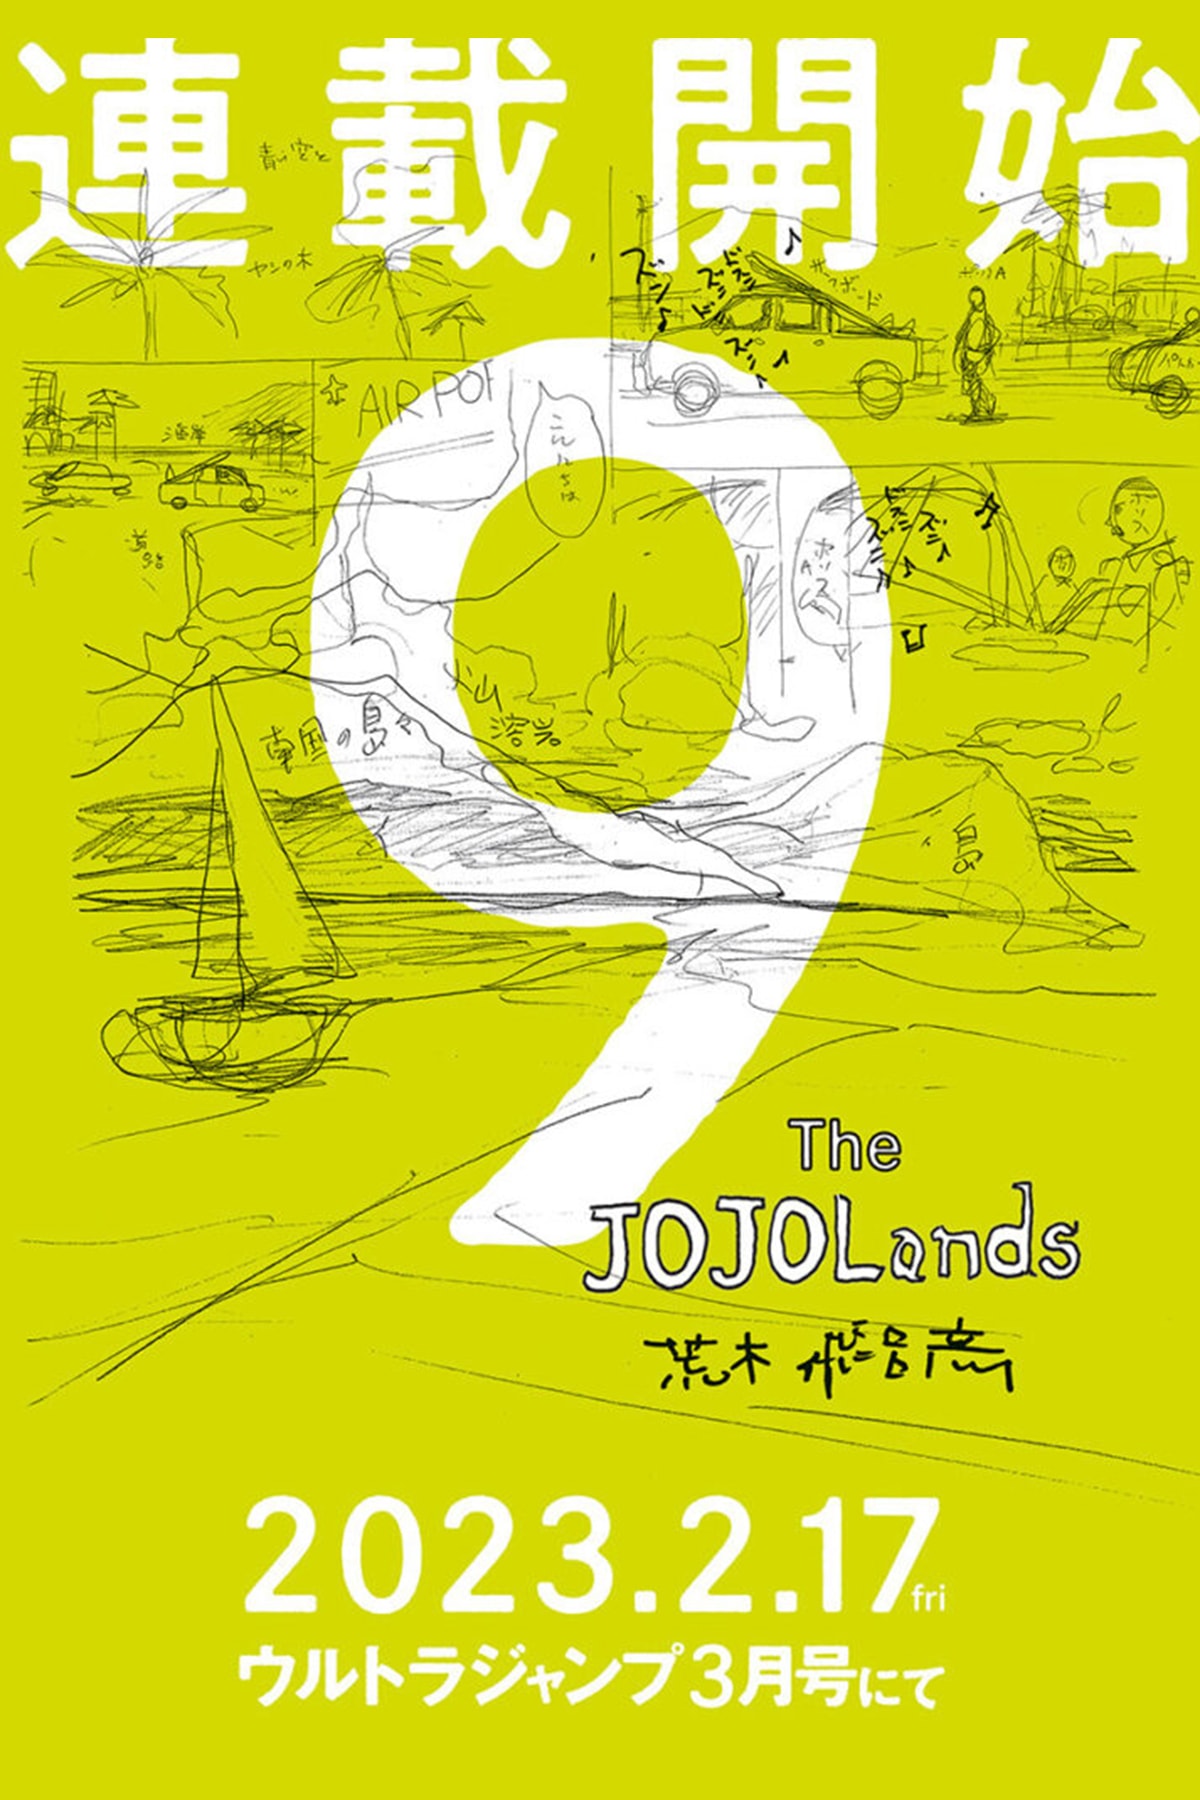 『ジョジョの奇妙な冒険』第9部の内容の一部が公開 JoJo’s Bizarre Adventure Part 9: The JOJOLands Protagonist and Premise Revealed news